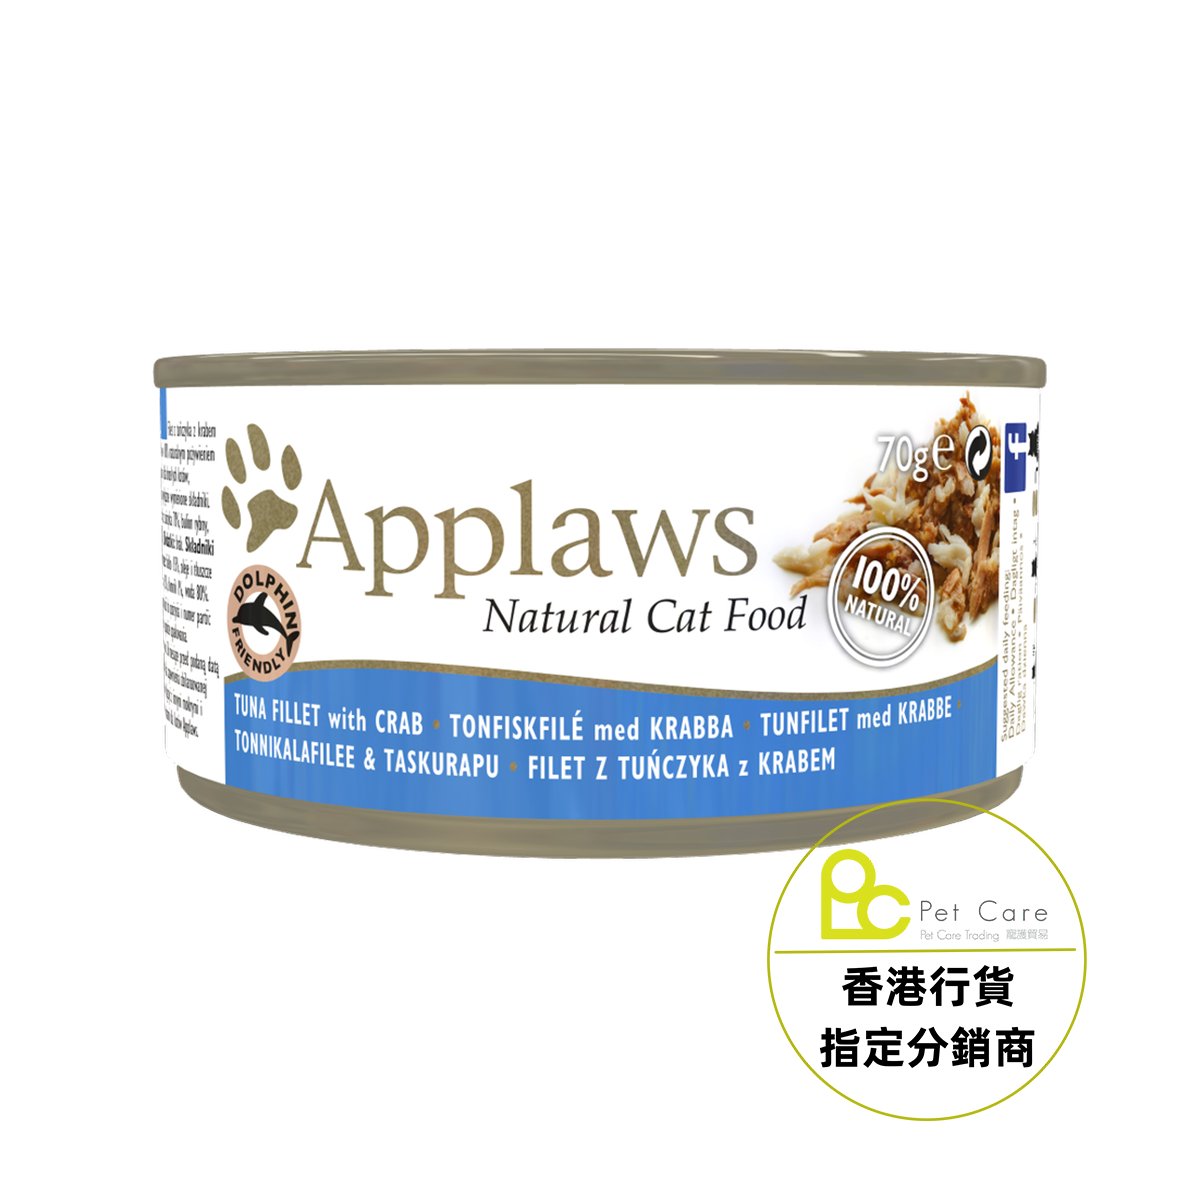 Applaws 全天然 貓罐頭 - 吞拿魚 + 蟹 70g (細)